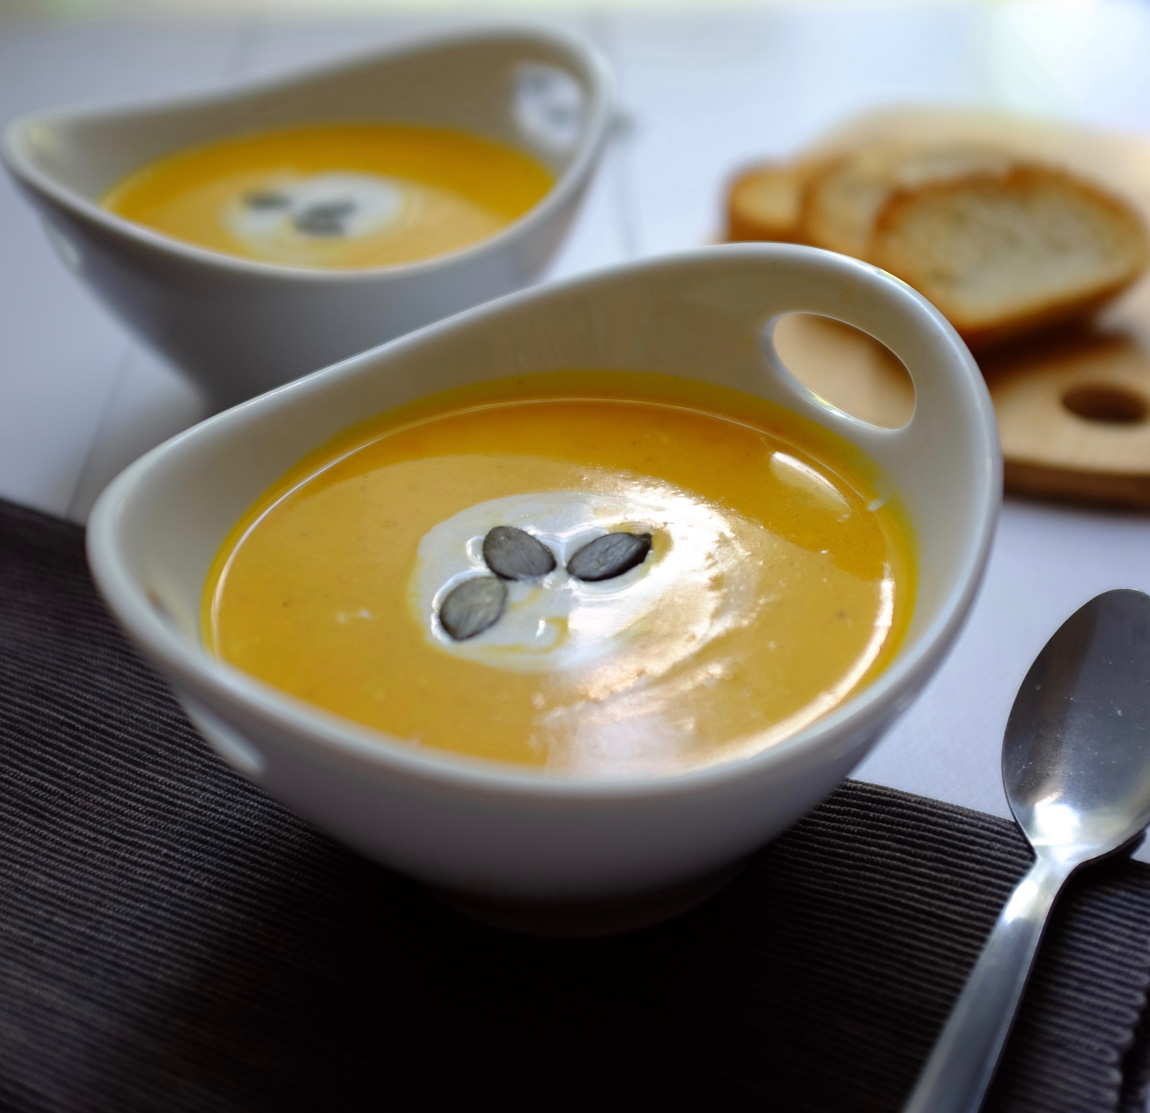 Diese schnelle Hokkaido-Kokos-Suppe ist wunderbar cremig und steckt voller toller Aromen. Nur 7 Zutaten und 30 Minuten Zubereitungszeit macht diese Suppe zu einem tollen Gericht an einem windigen Herbsttag.